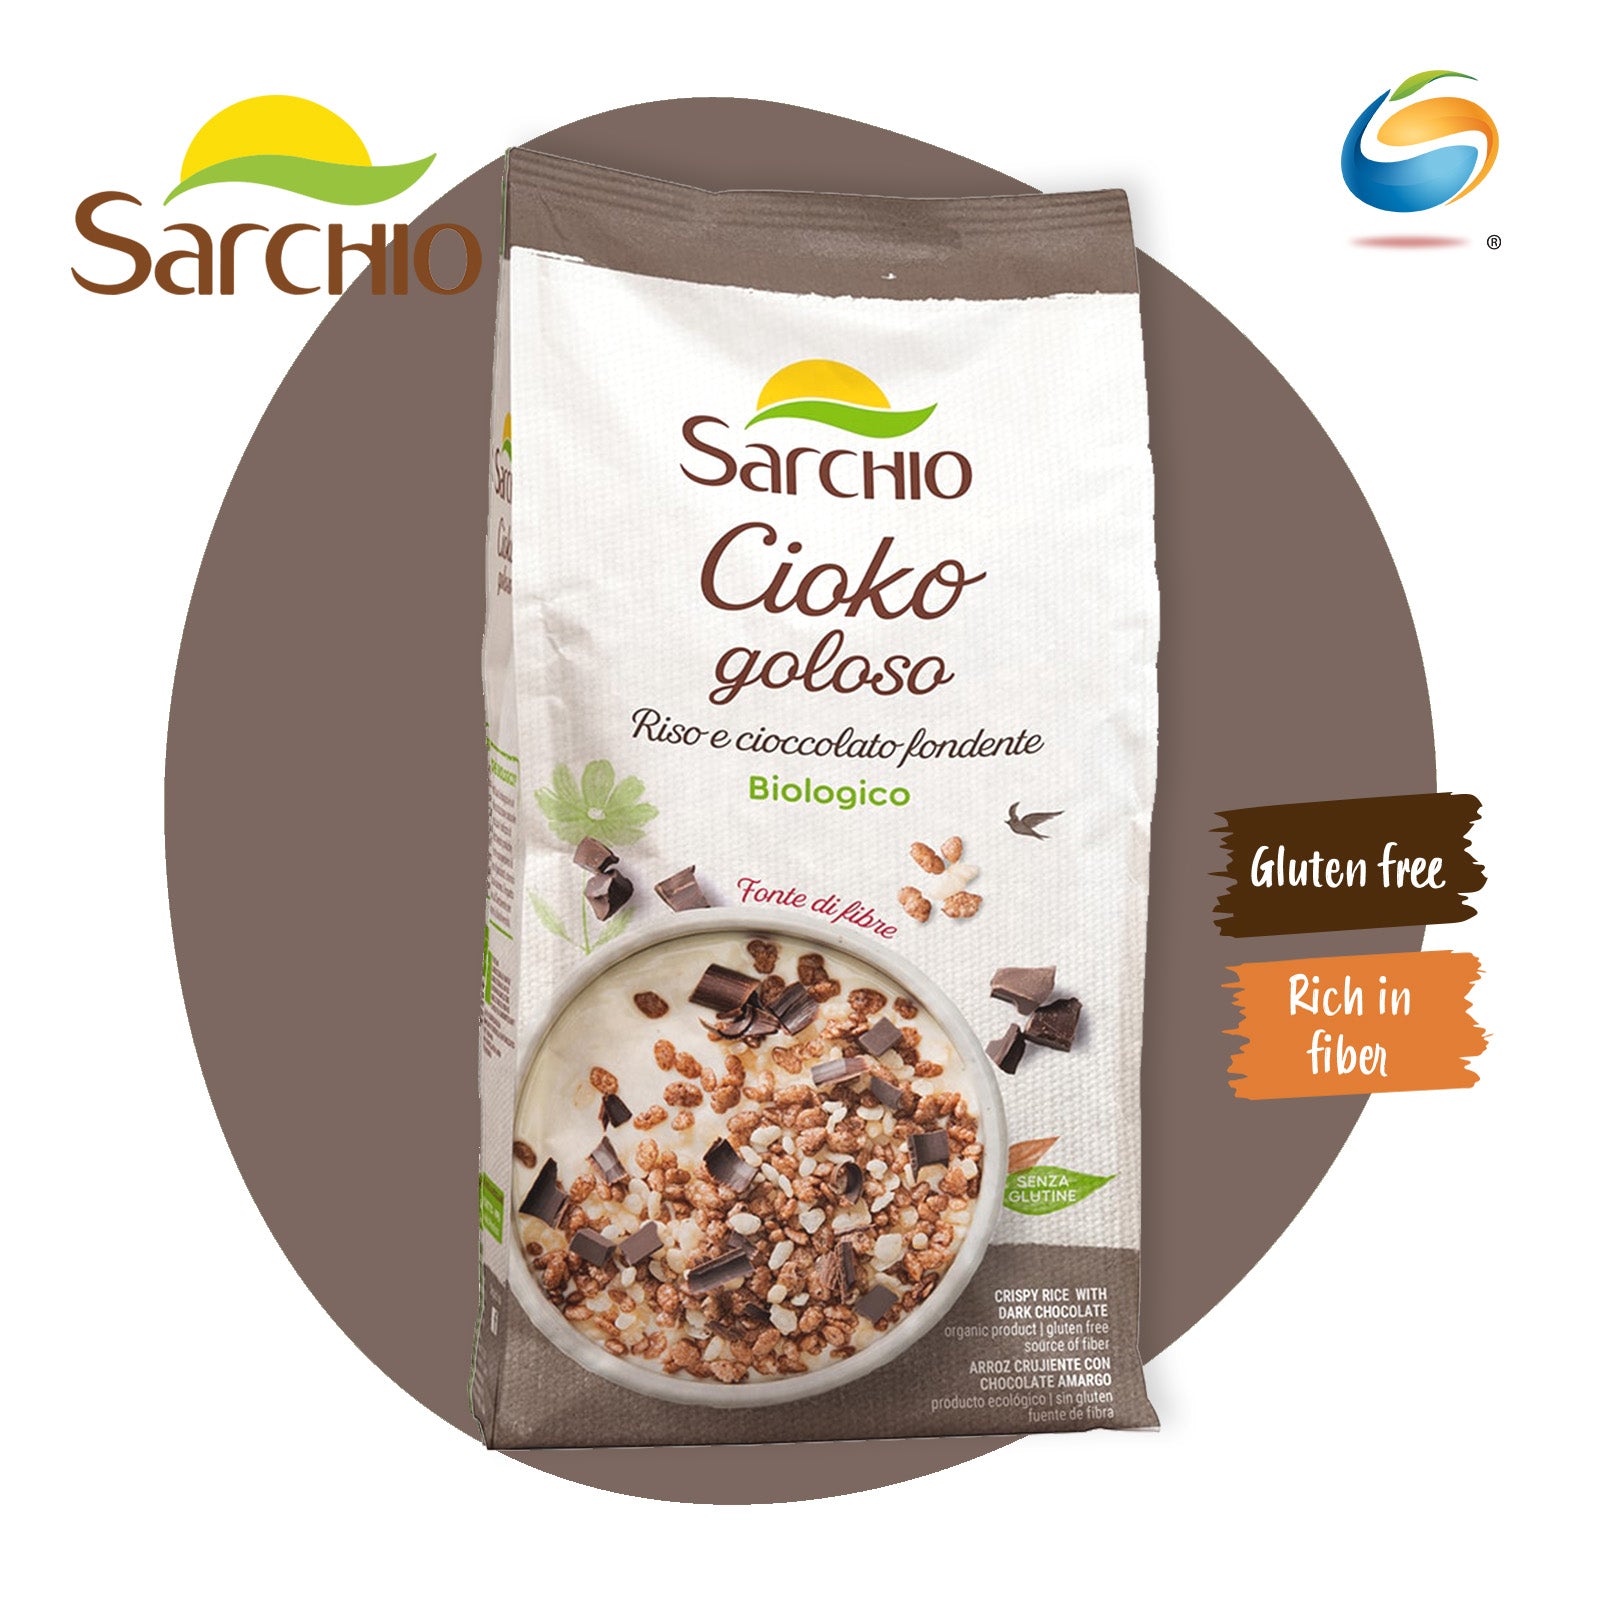 SARCHIO Organic Cereals